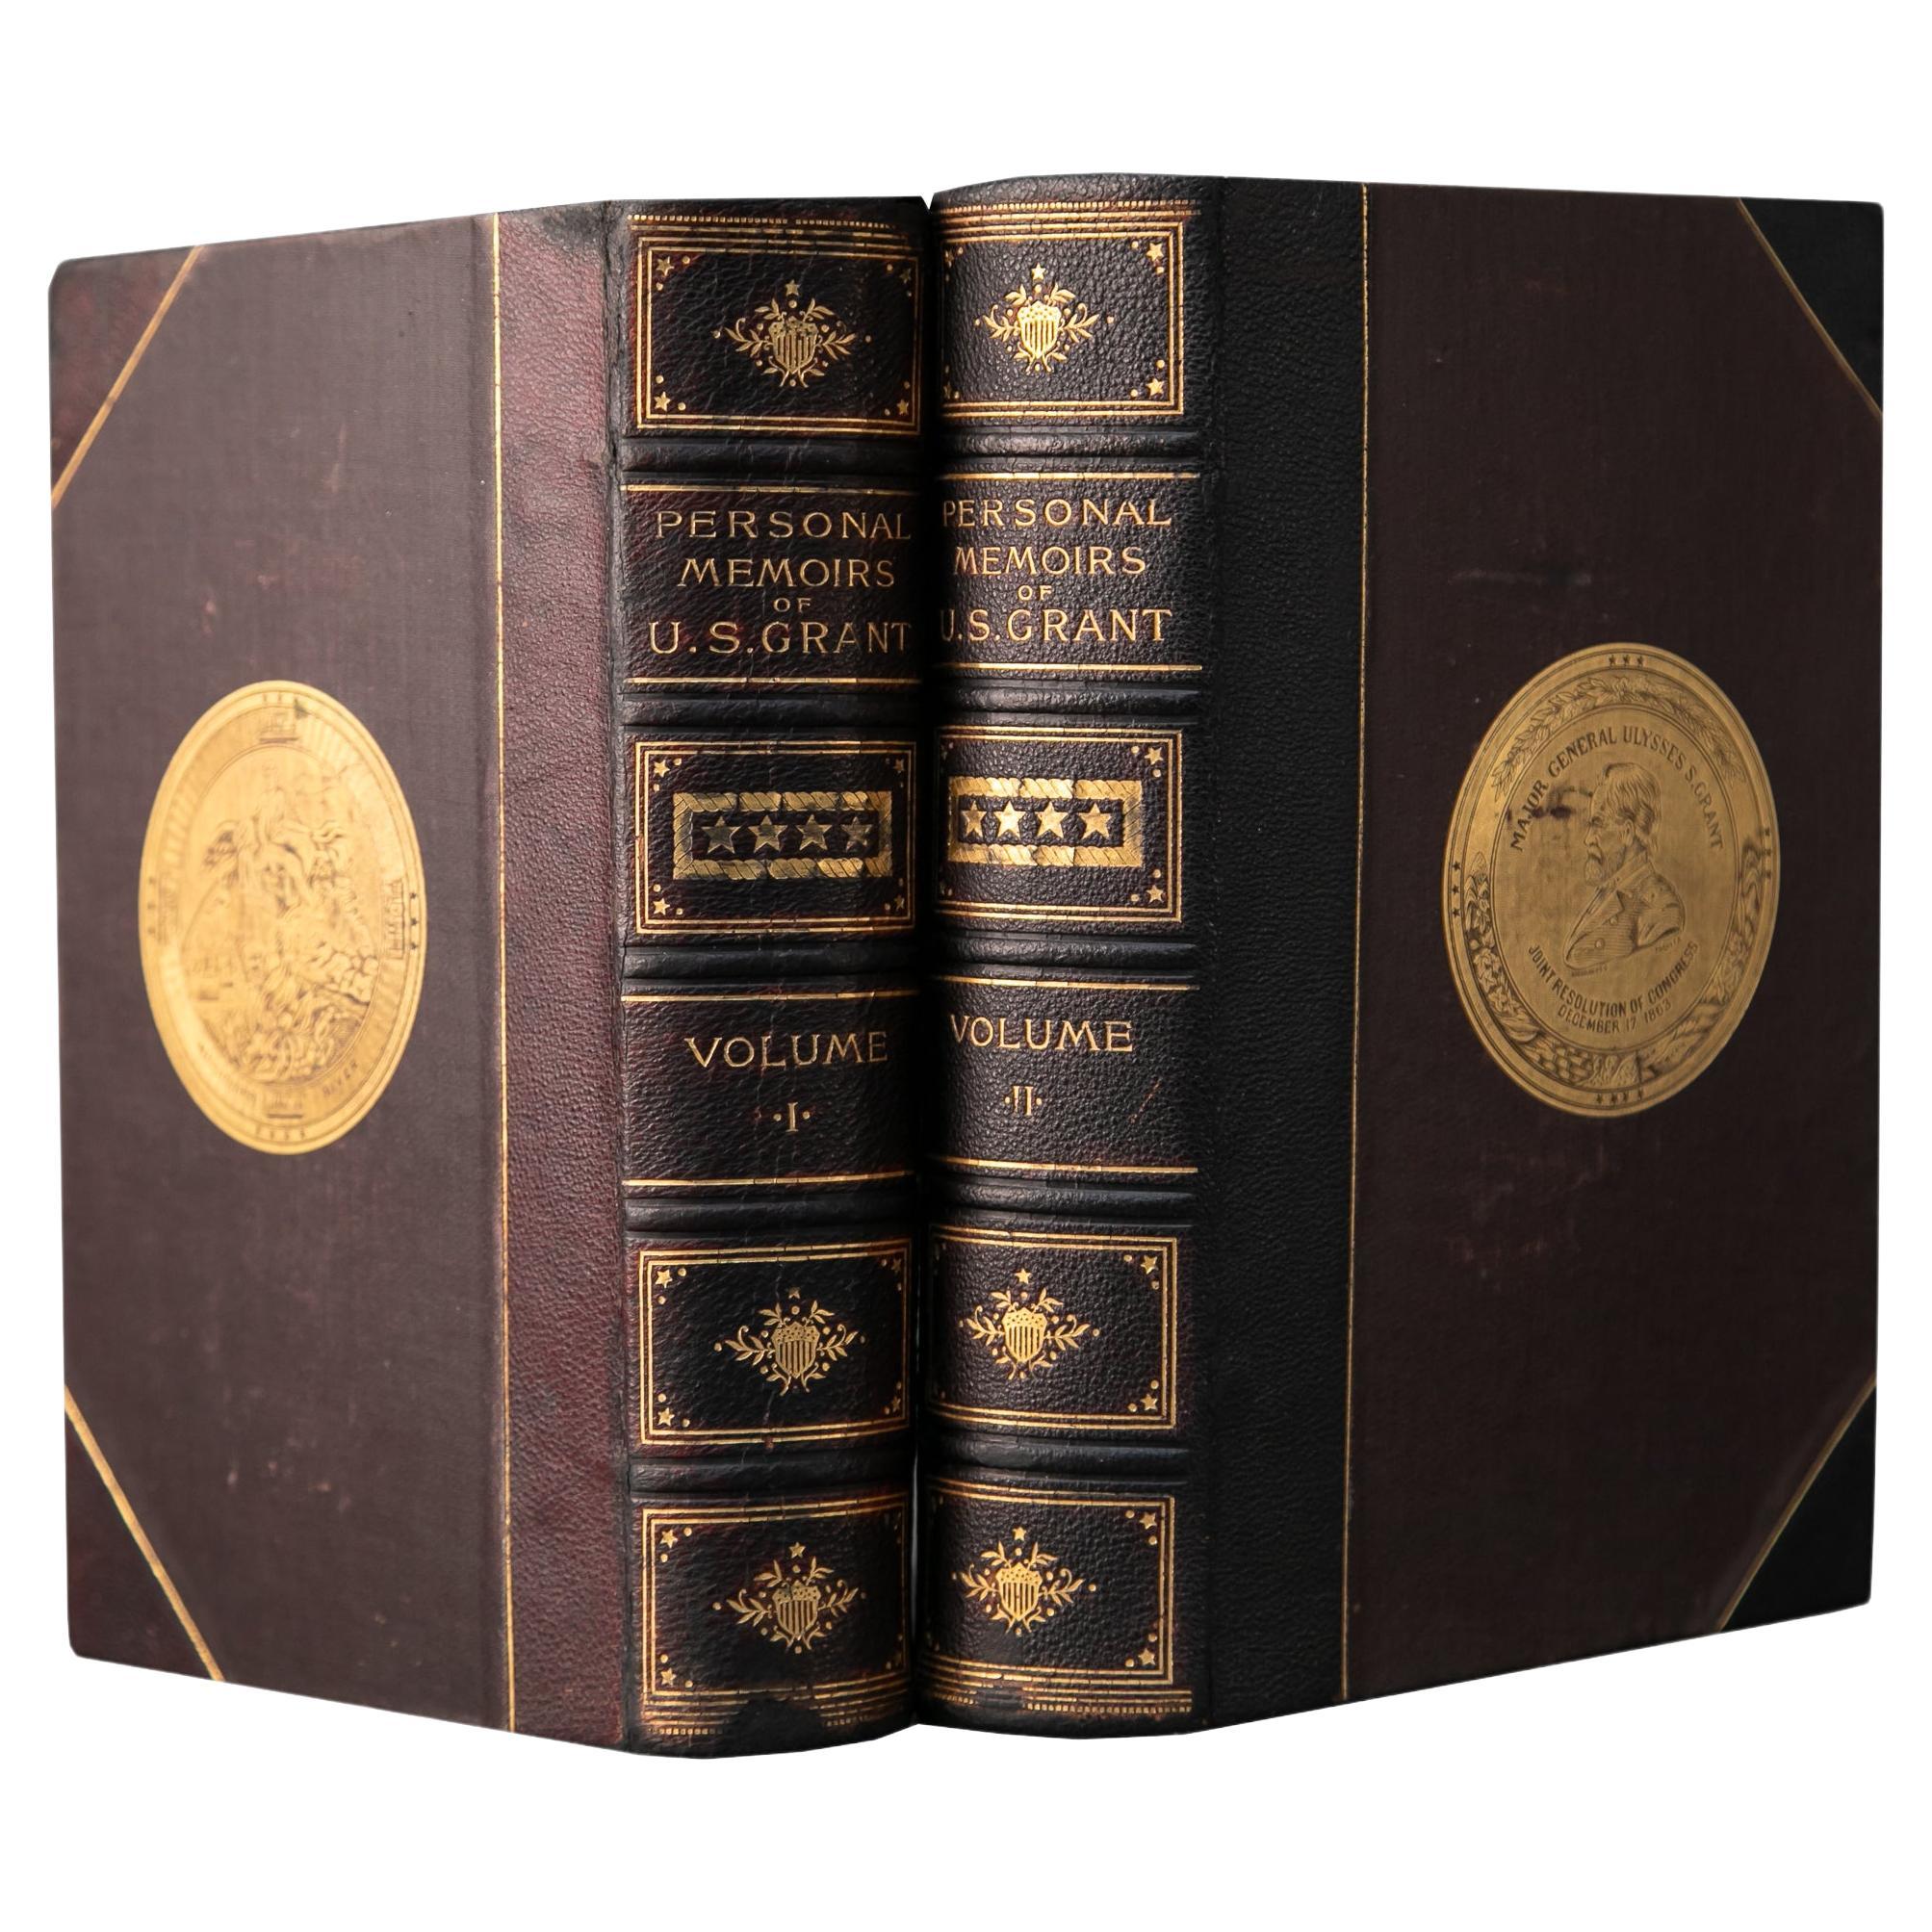 2 Volumes. U.S. Grant, Personal Memoirs.